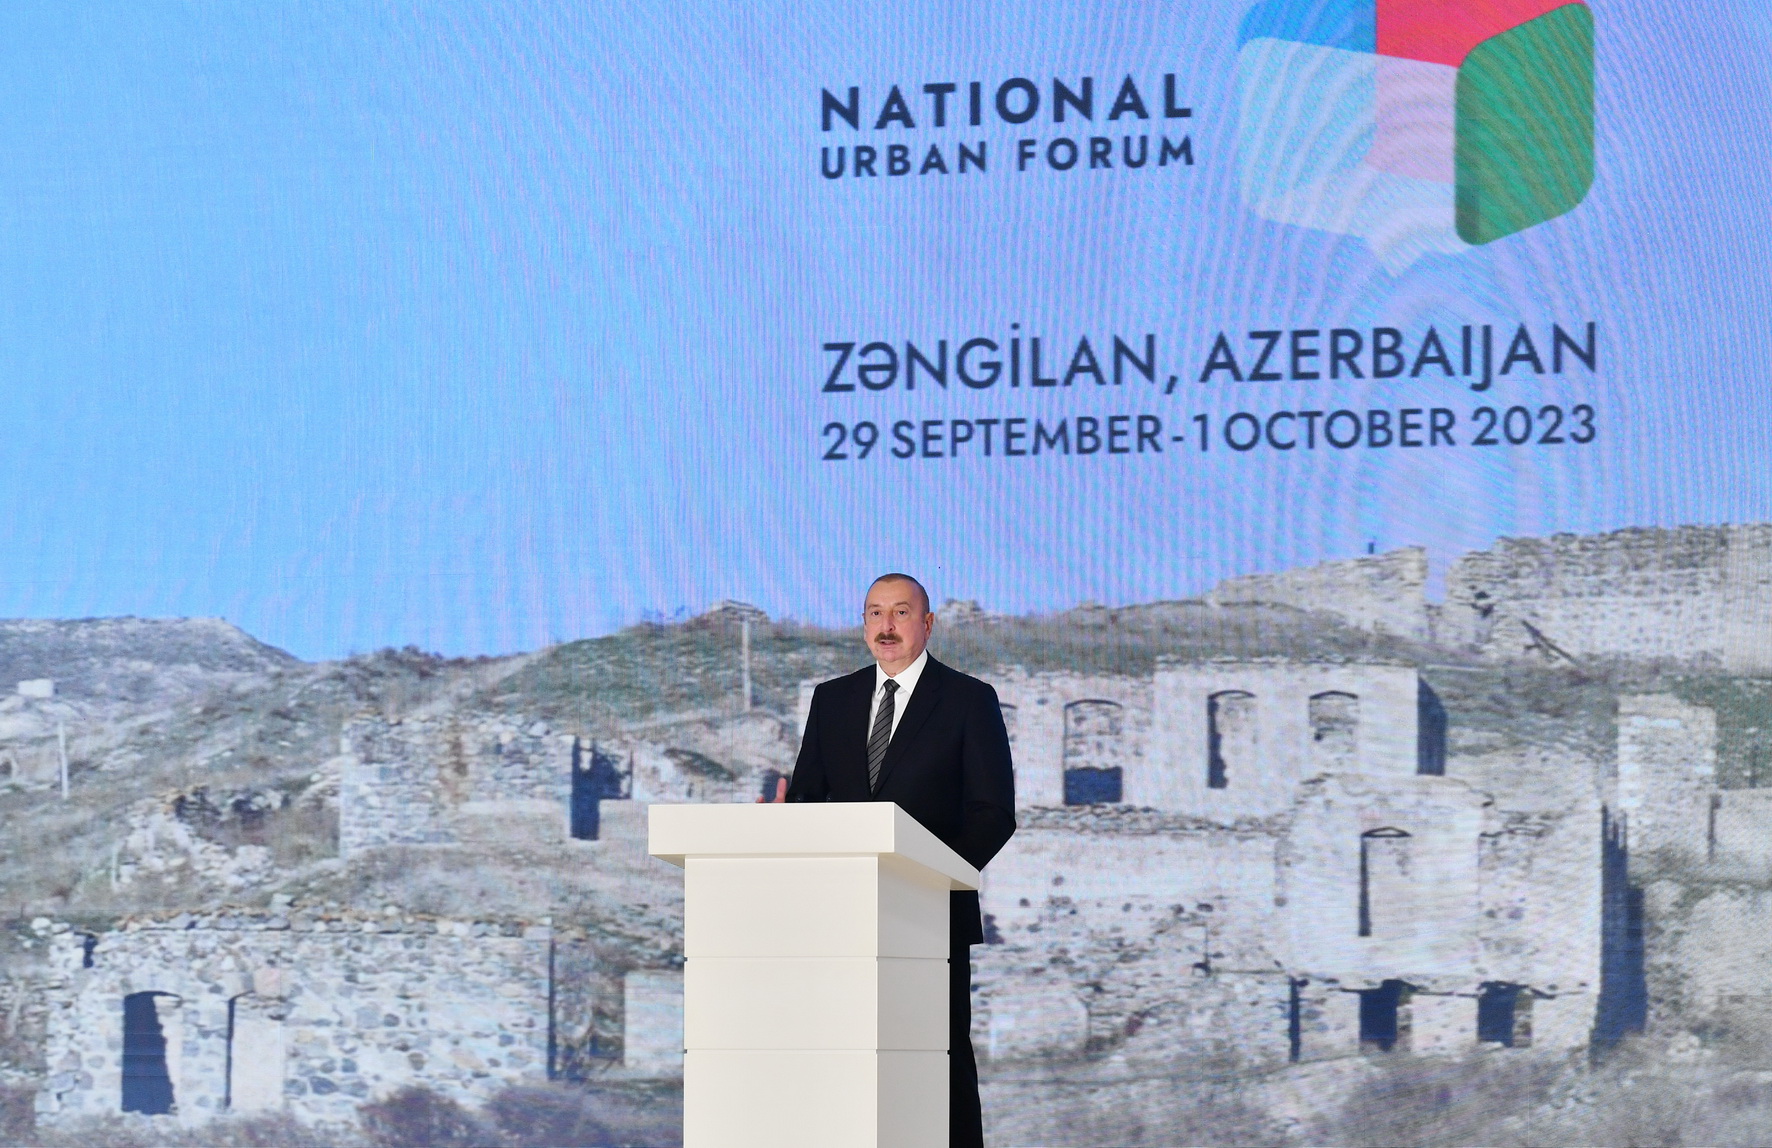 Azərbaycan Prezidenti: “Zəngilanı mühüm nəqliyyat qovşağı hesab edirik”